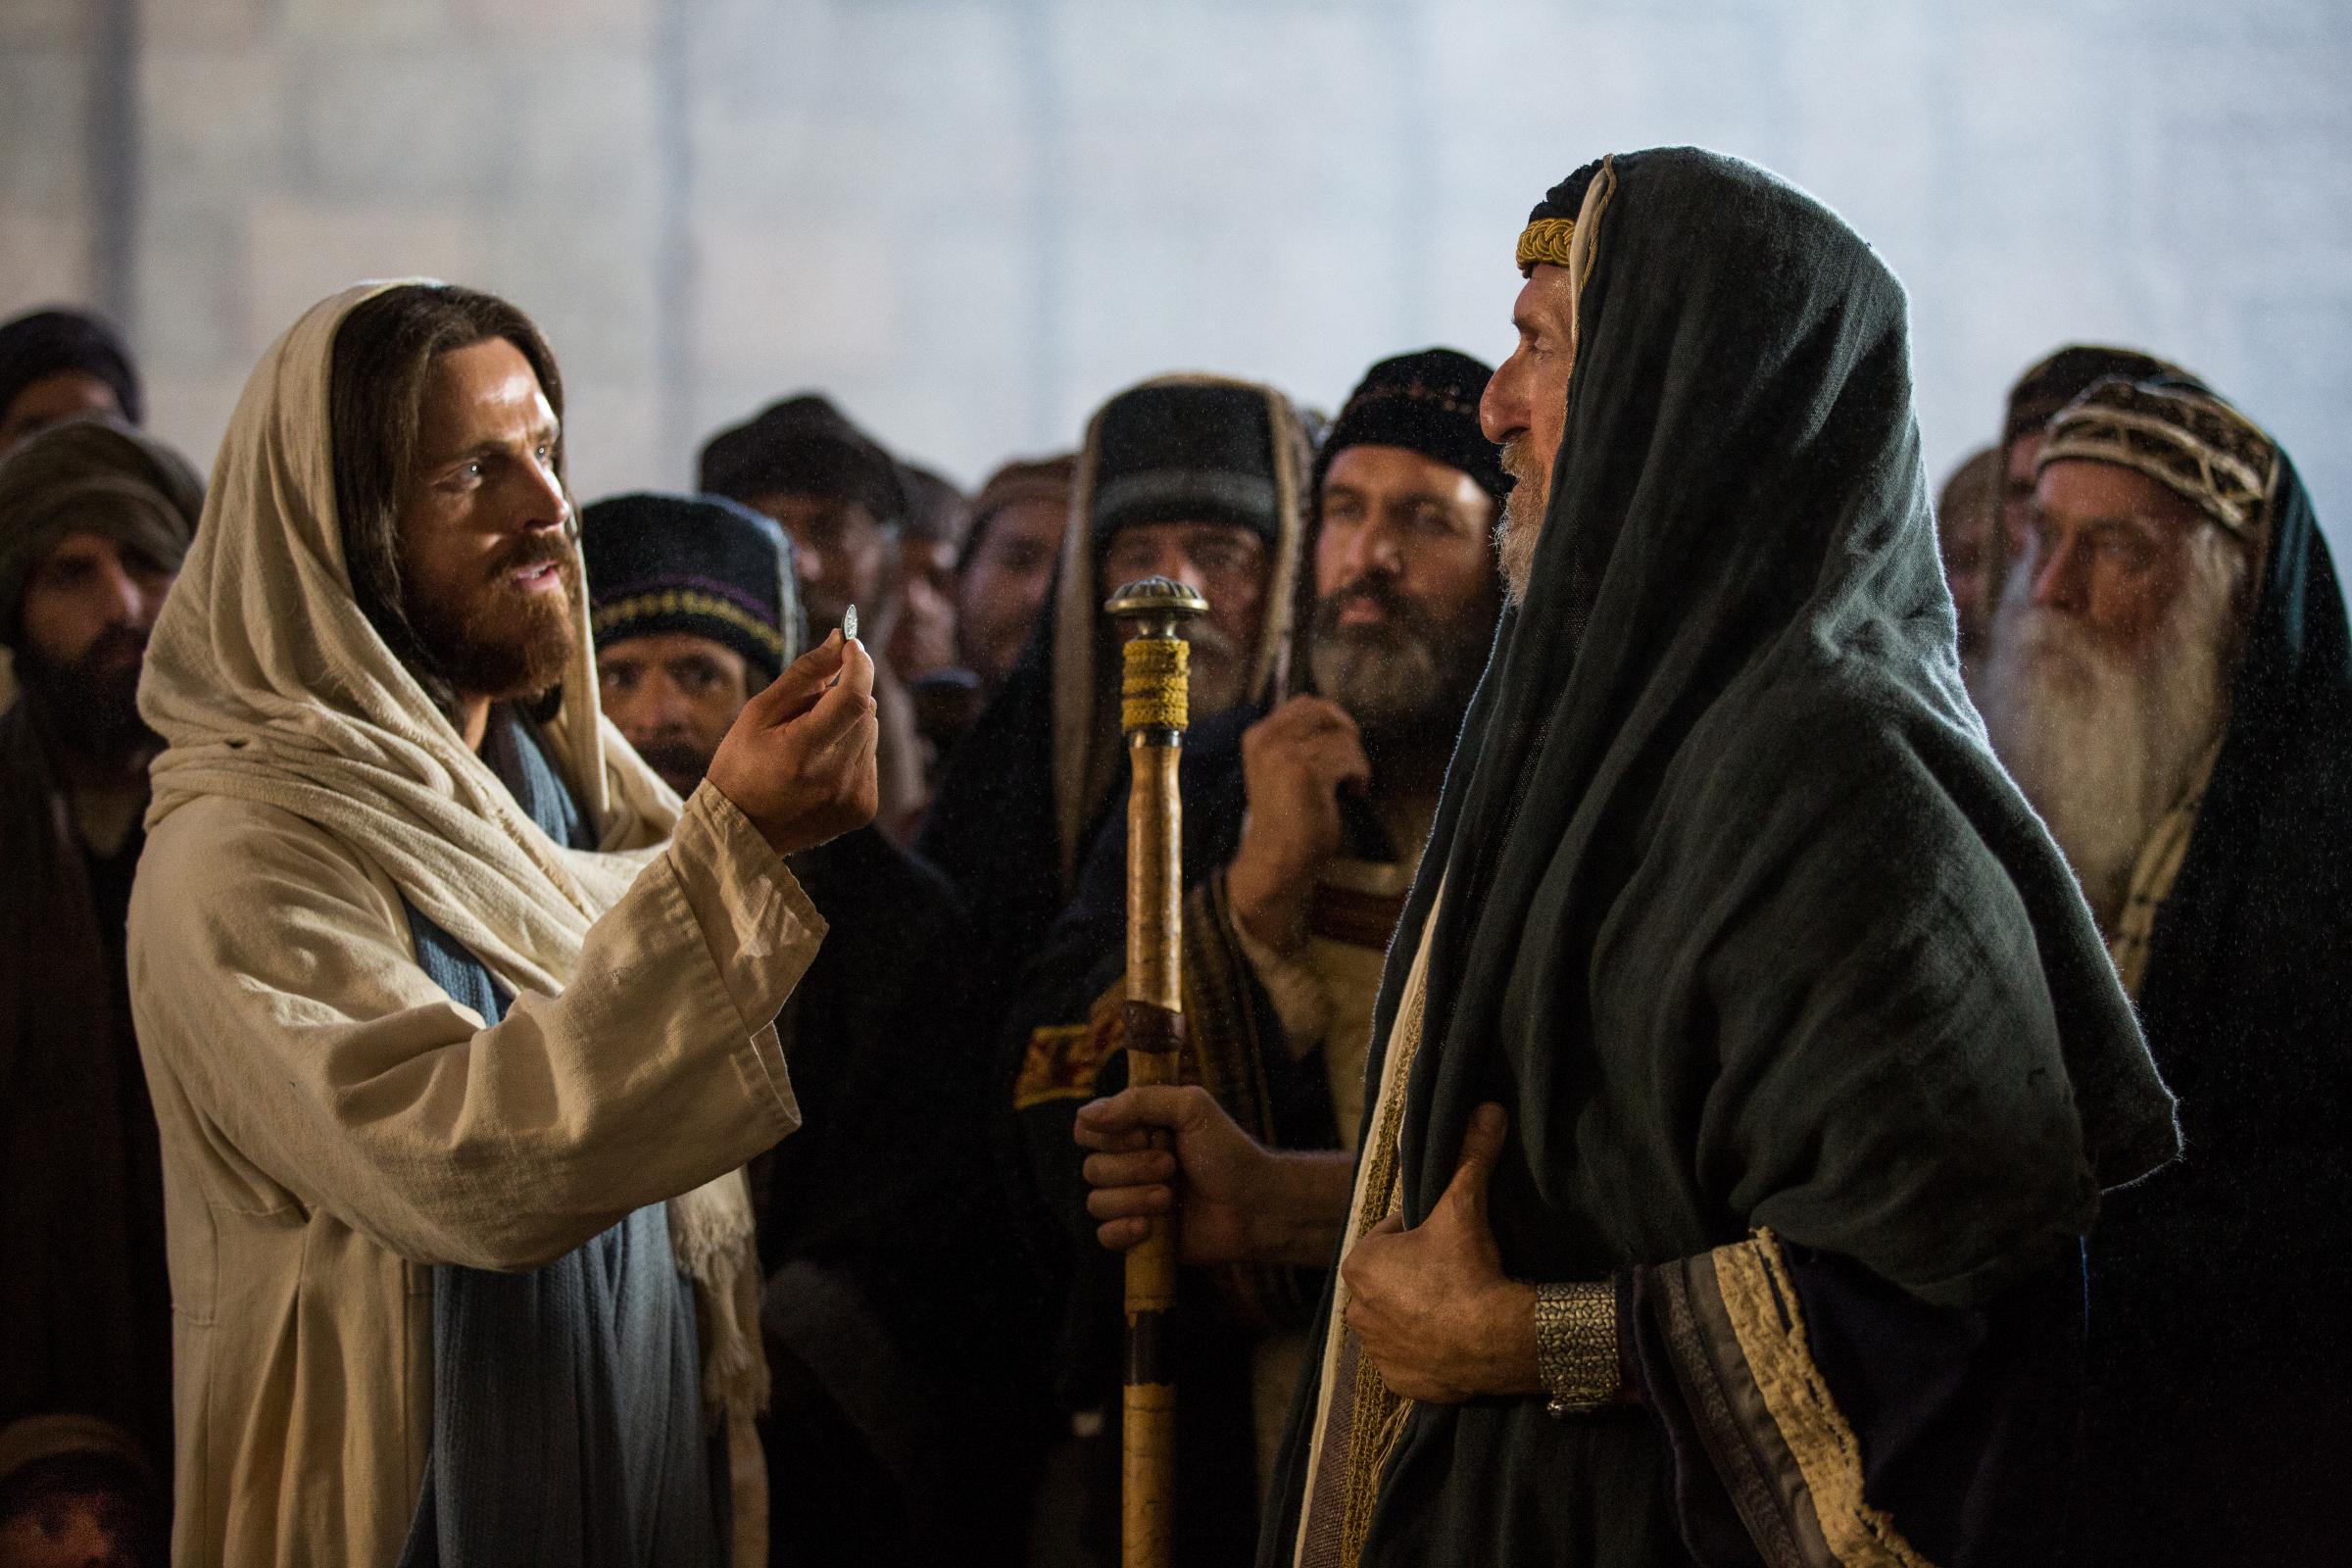 pharisees-question-jesus.jpg